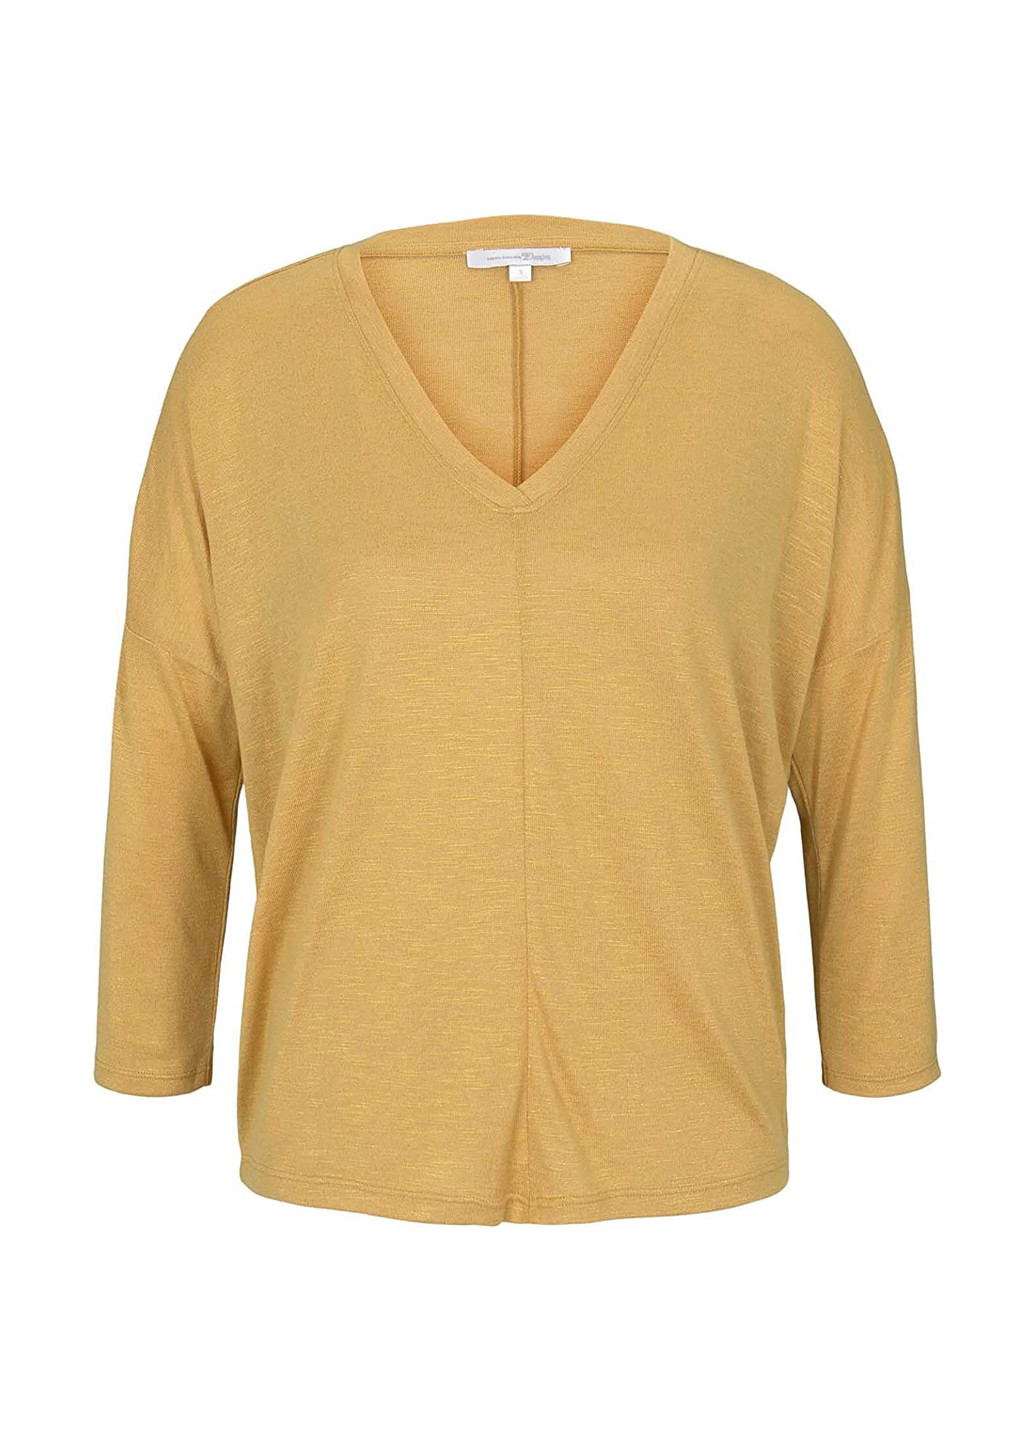 Желтый демисезонный пуловер пуловер Tom Tailor